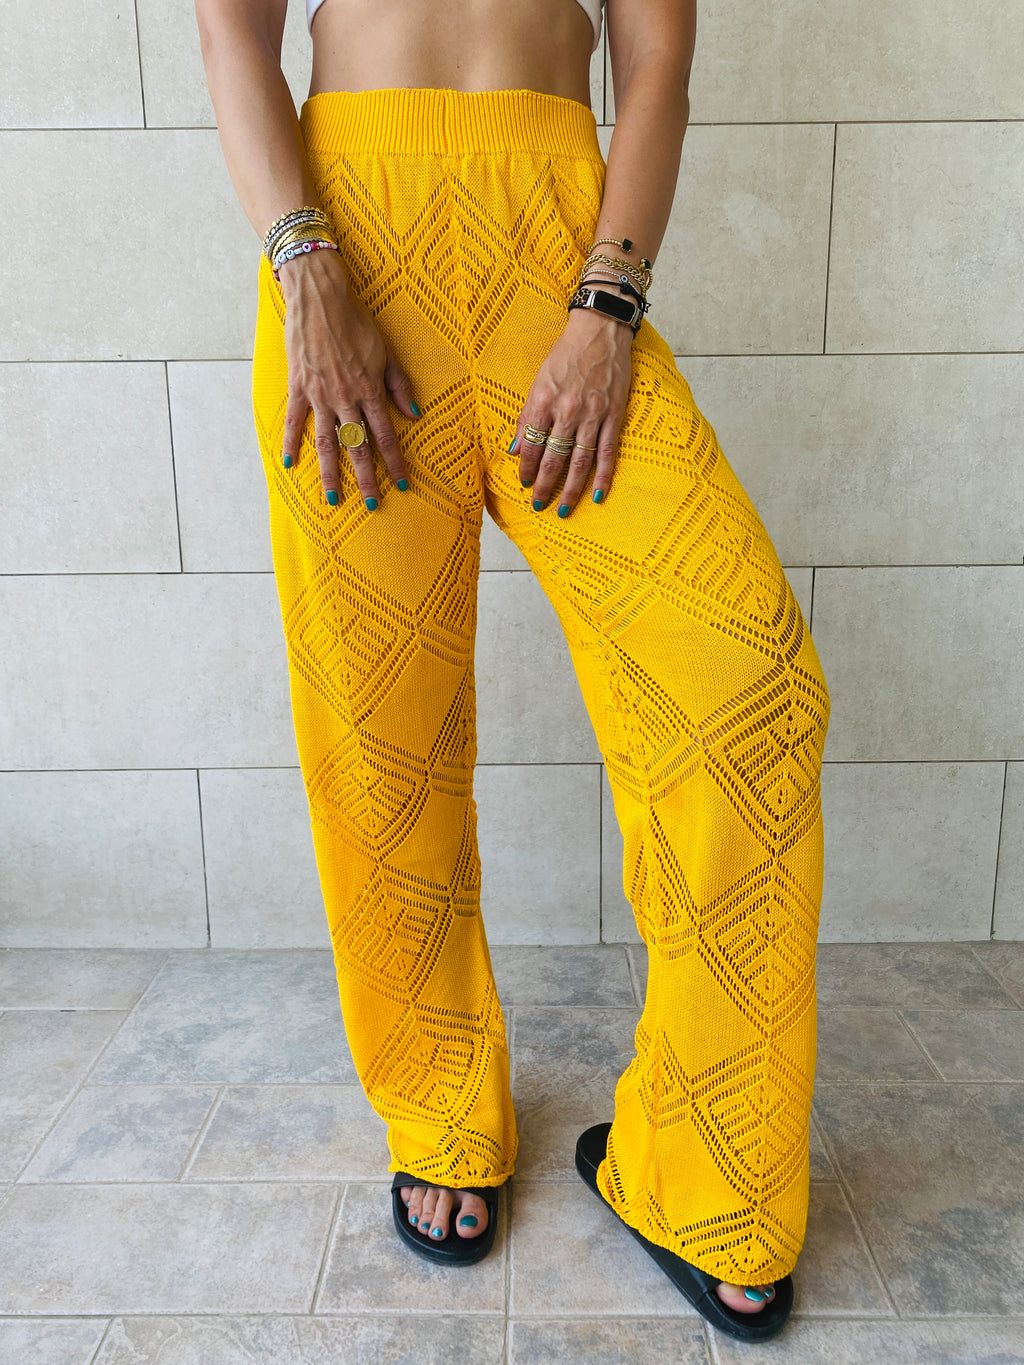 Yellow Crochet Pants